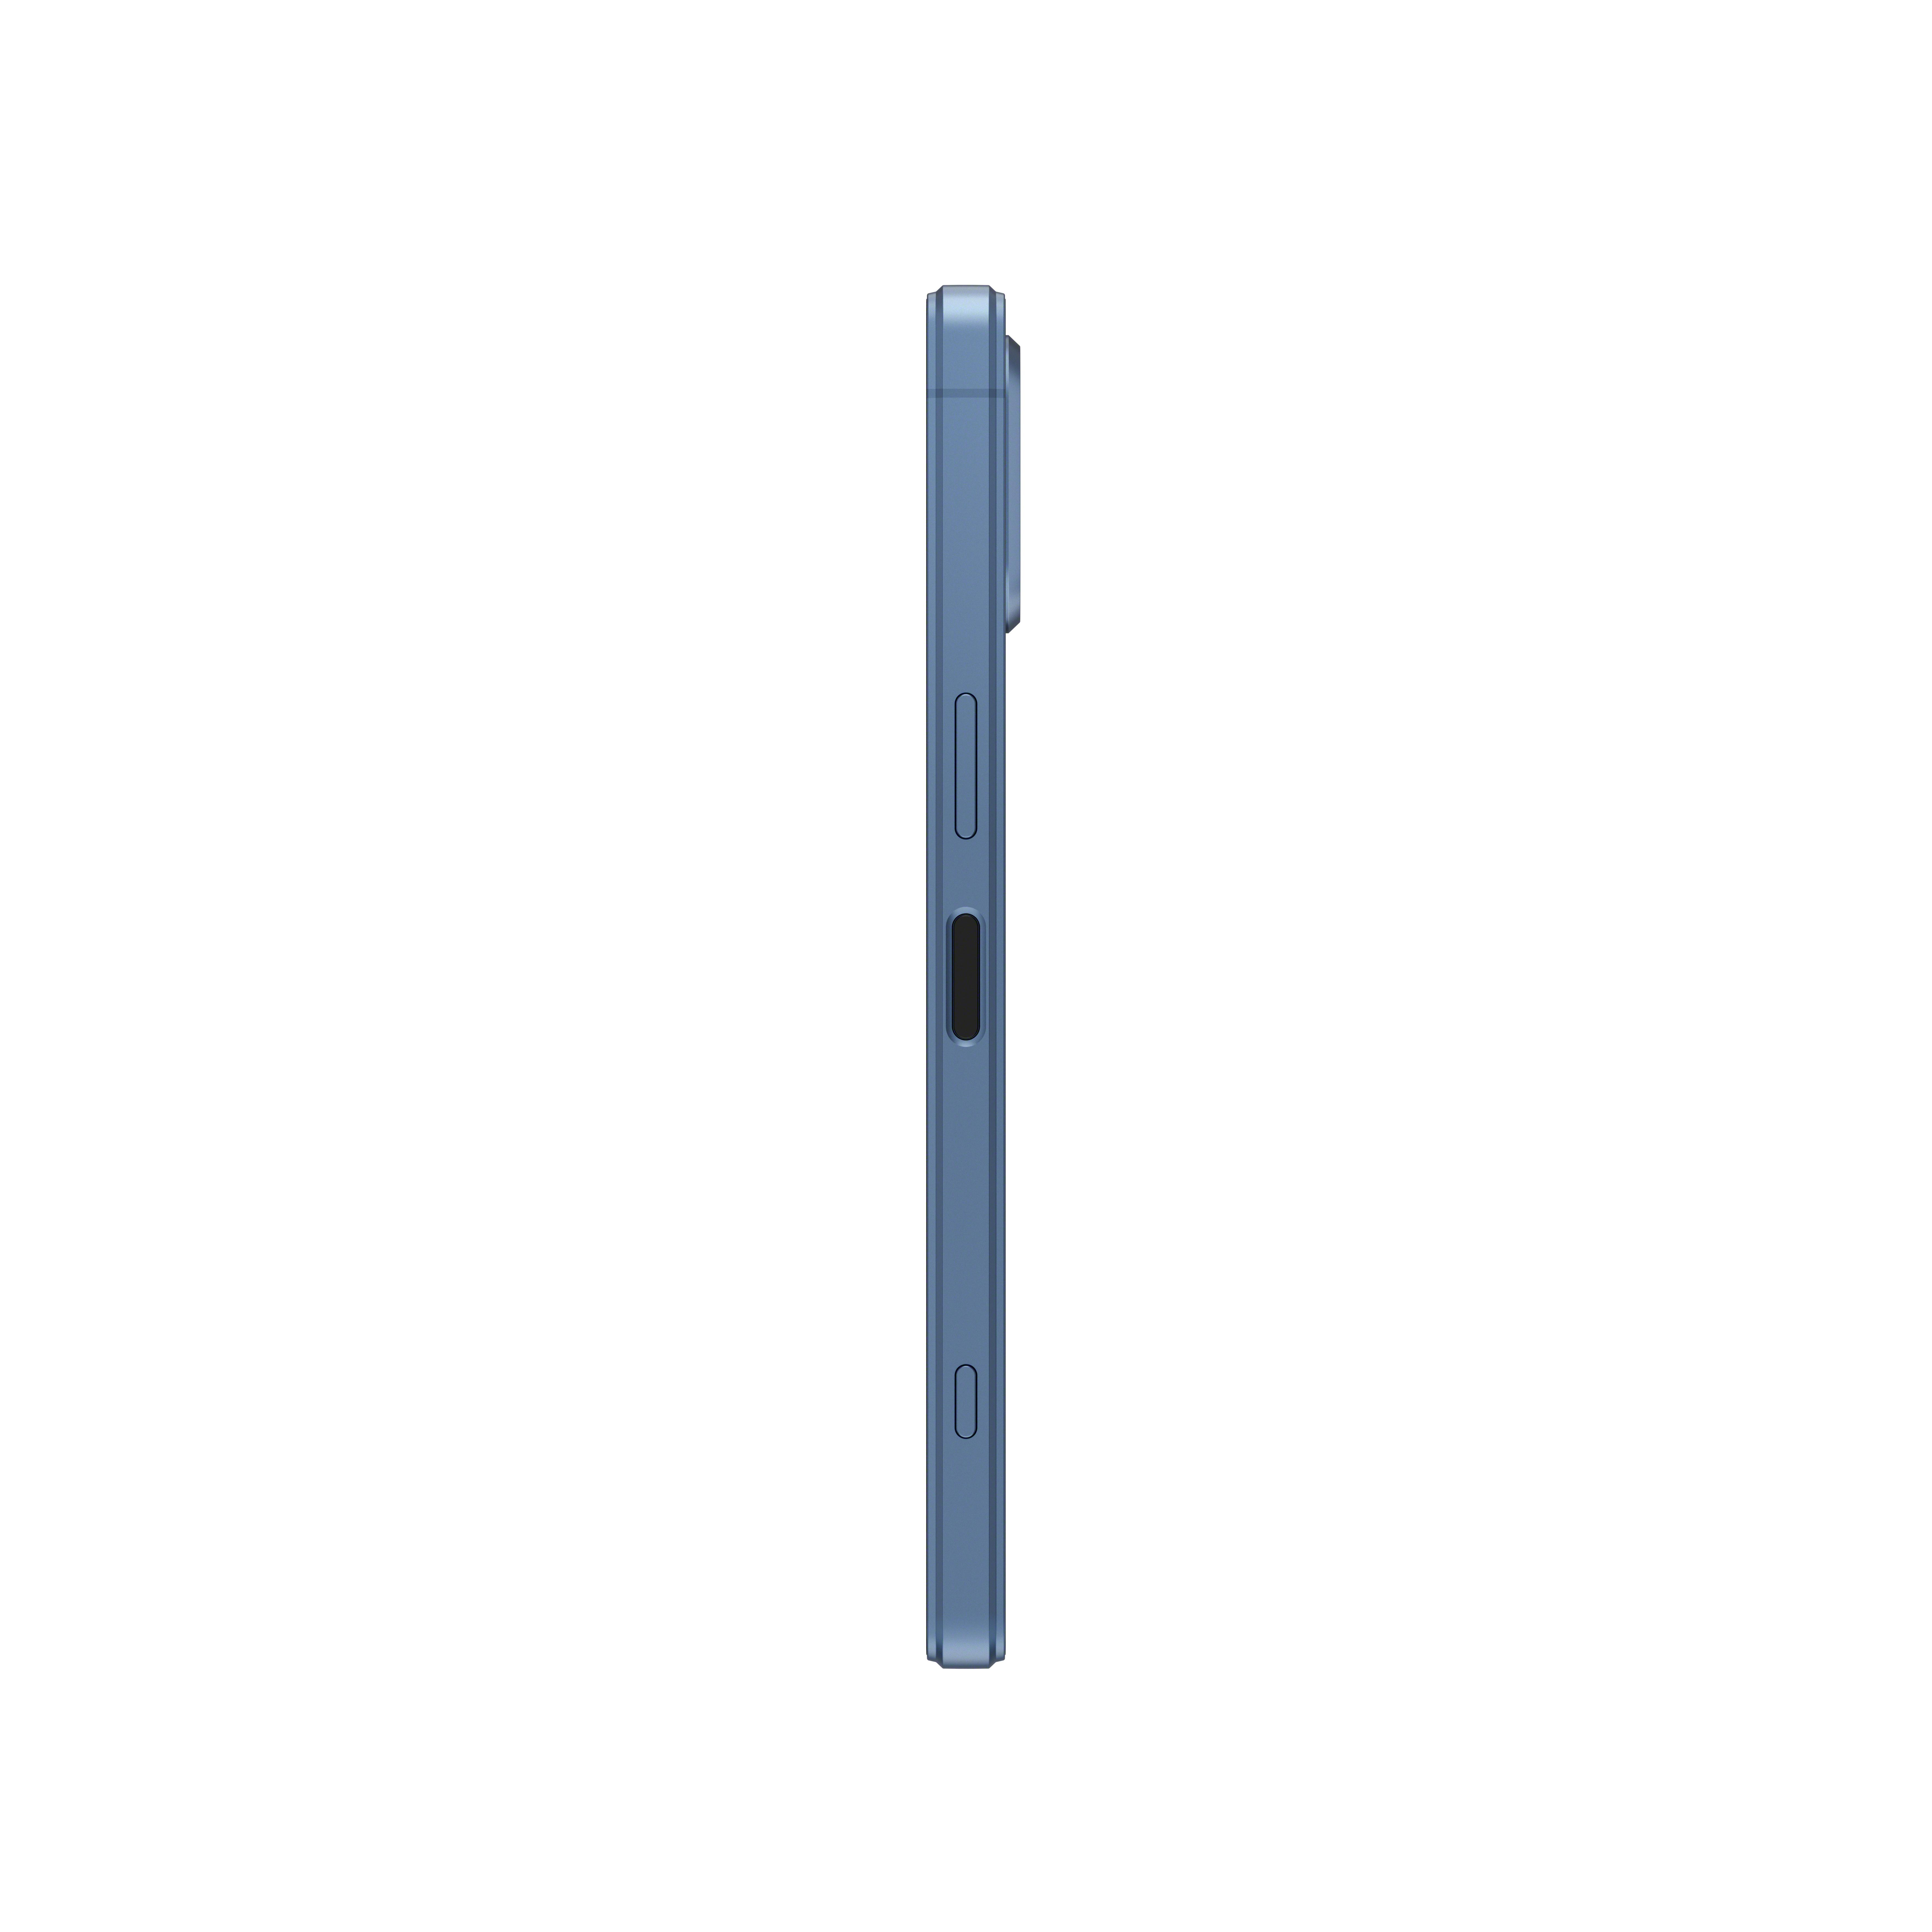 SONY Xperia Blau V Dual GB SIM 5 128